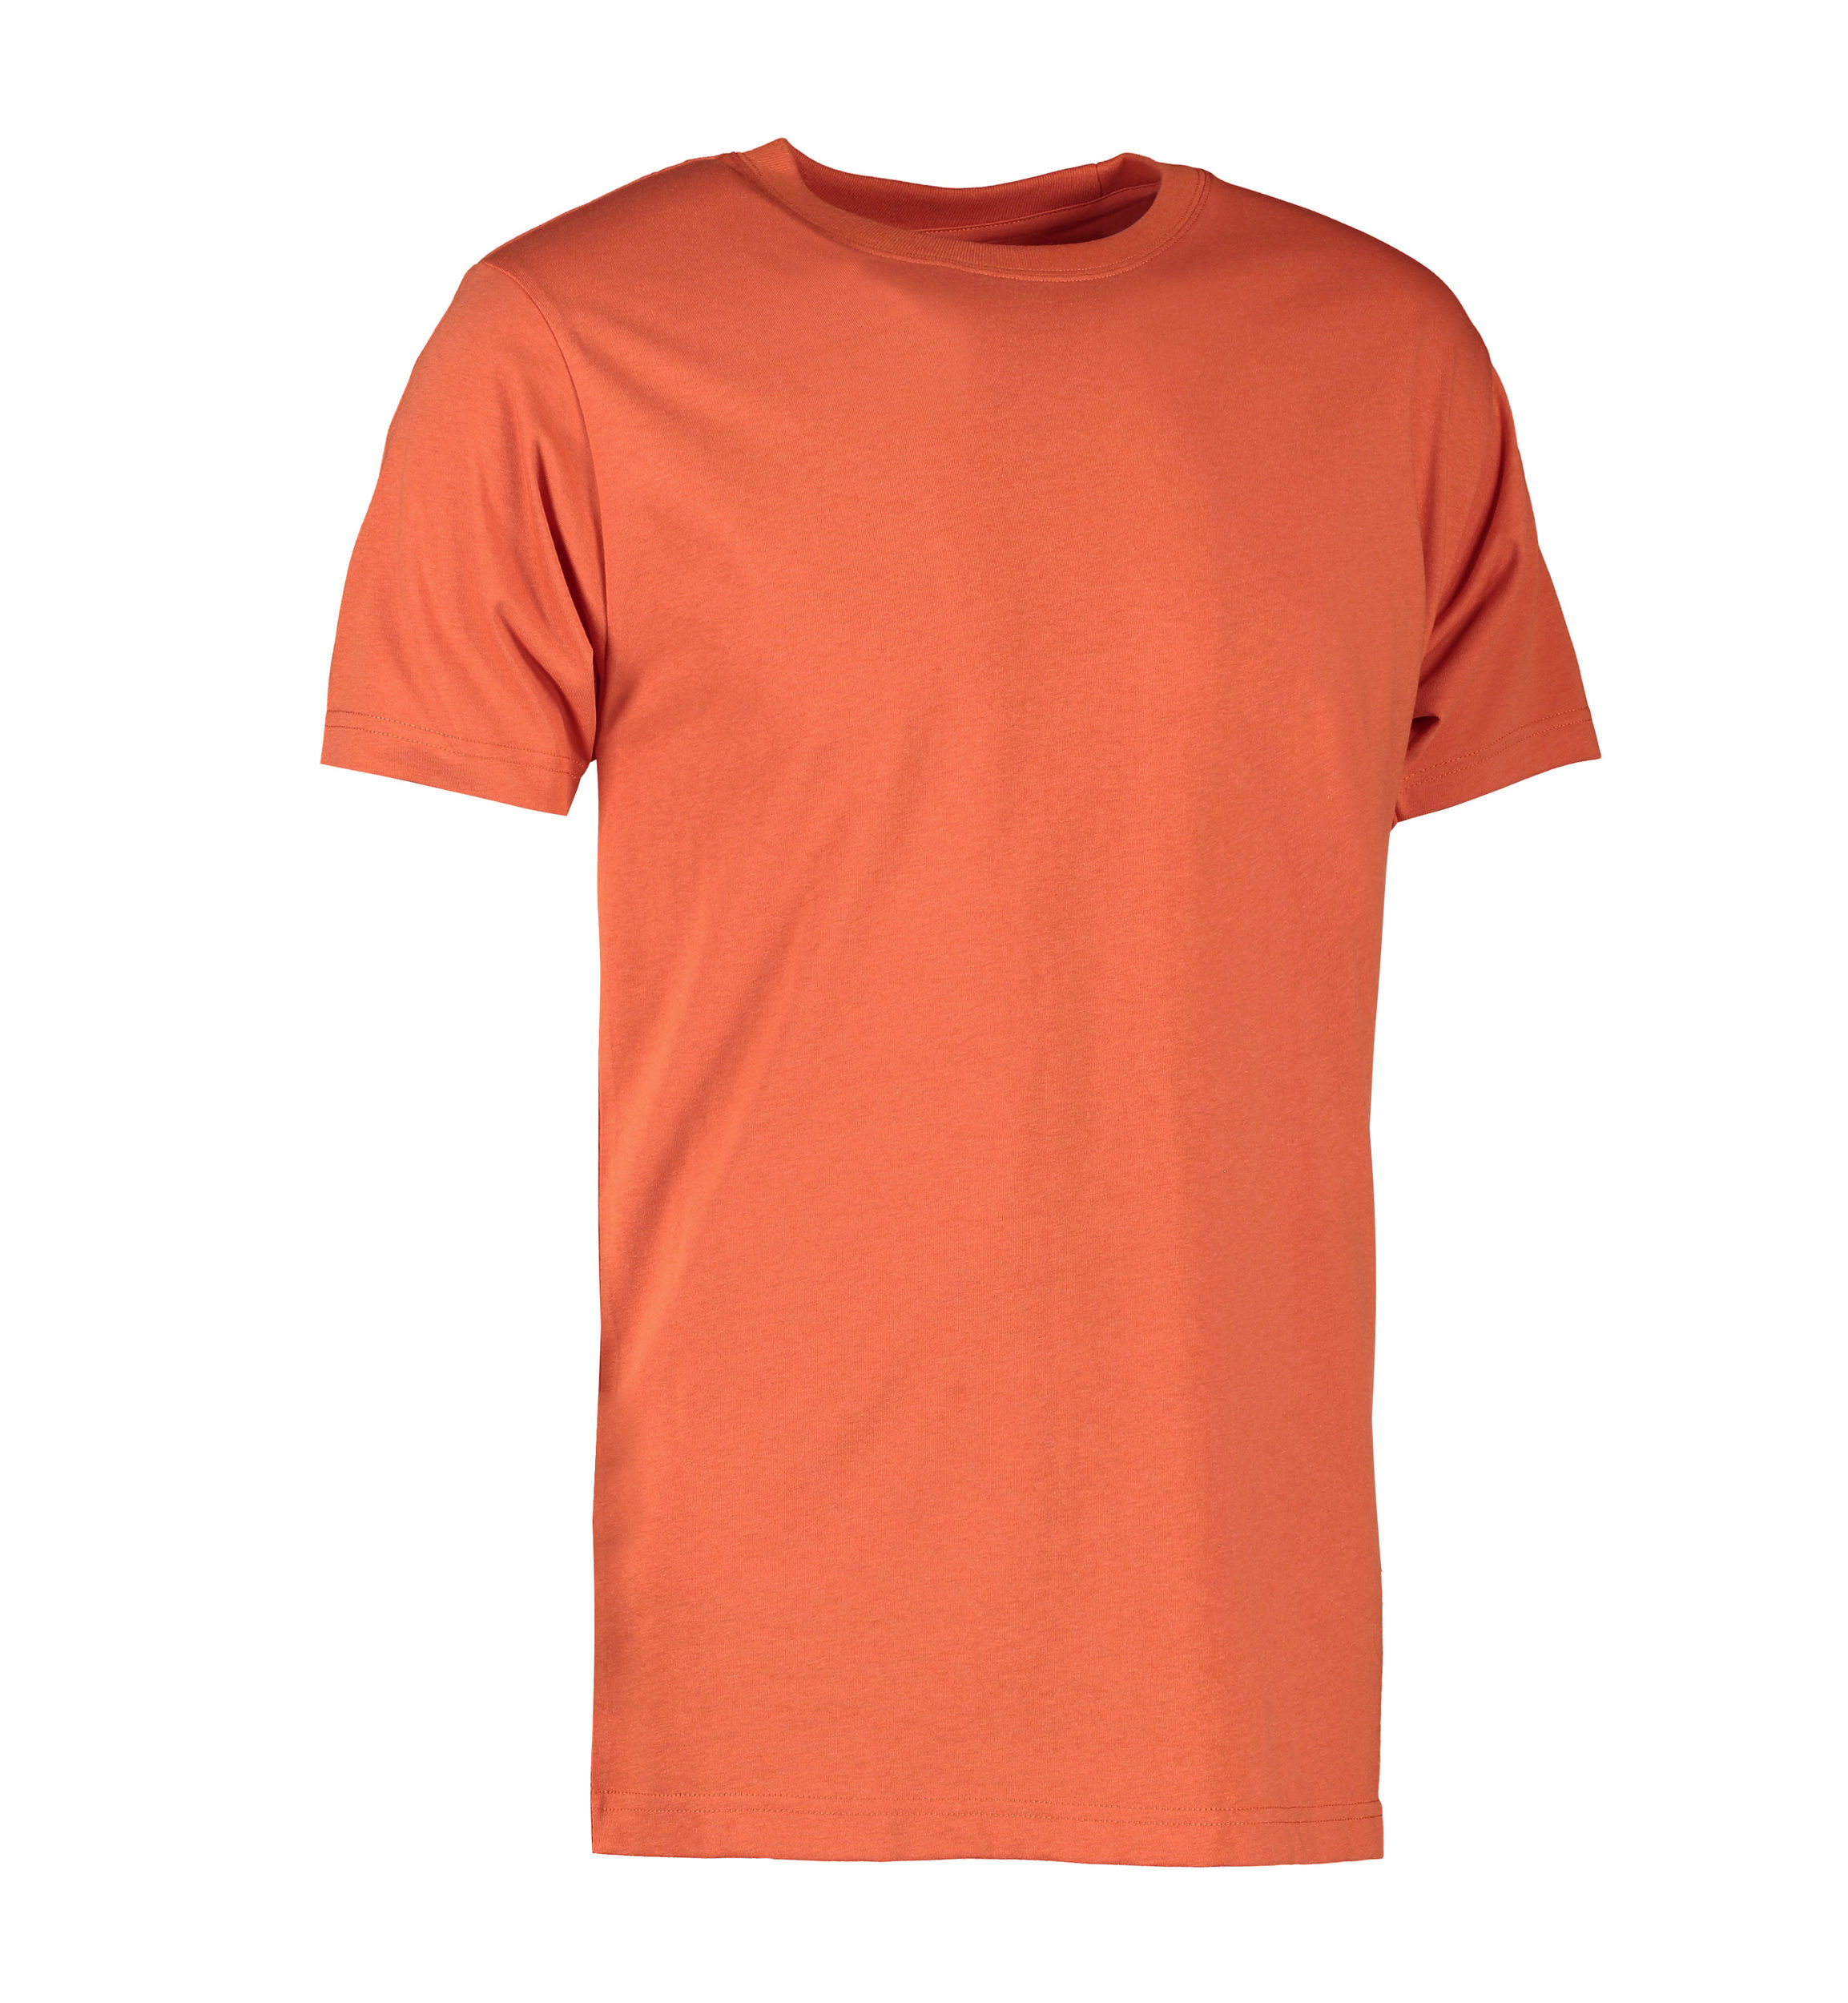 Billede af Koral farvet slidstærk t-shirt til mænd - M hos Sygeplejebutikken.dk